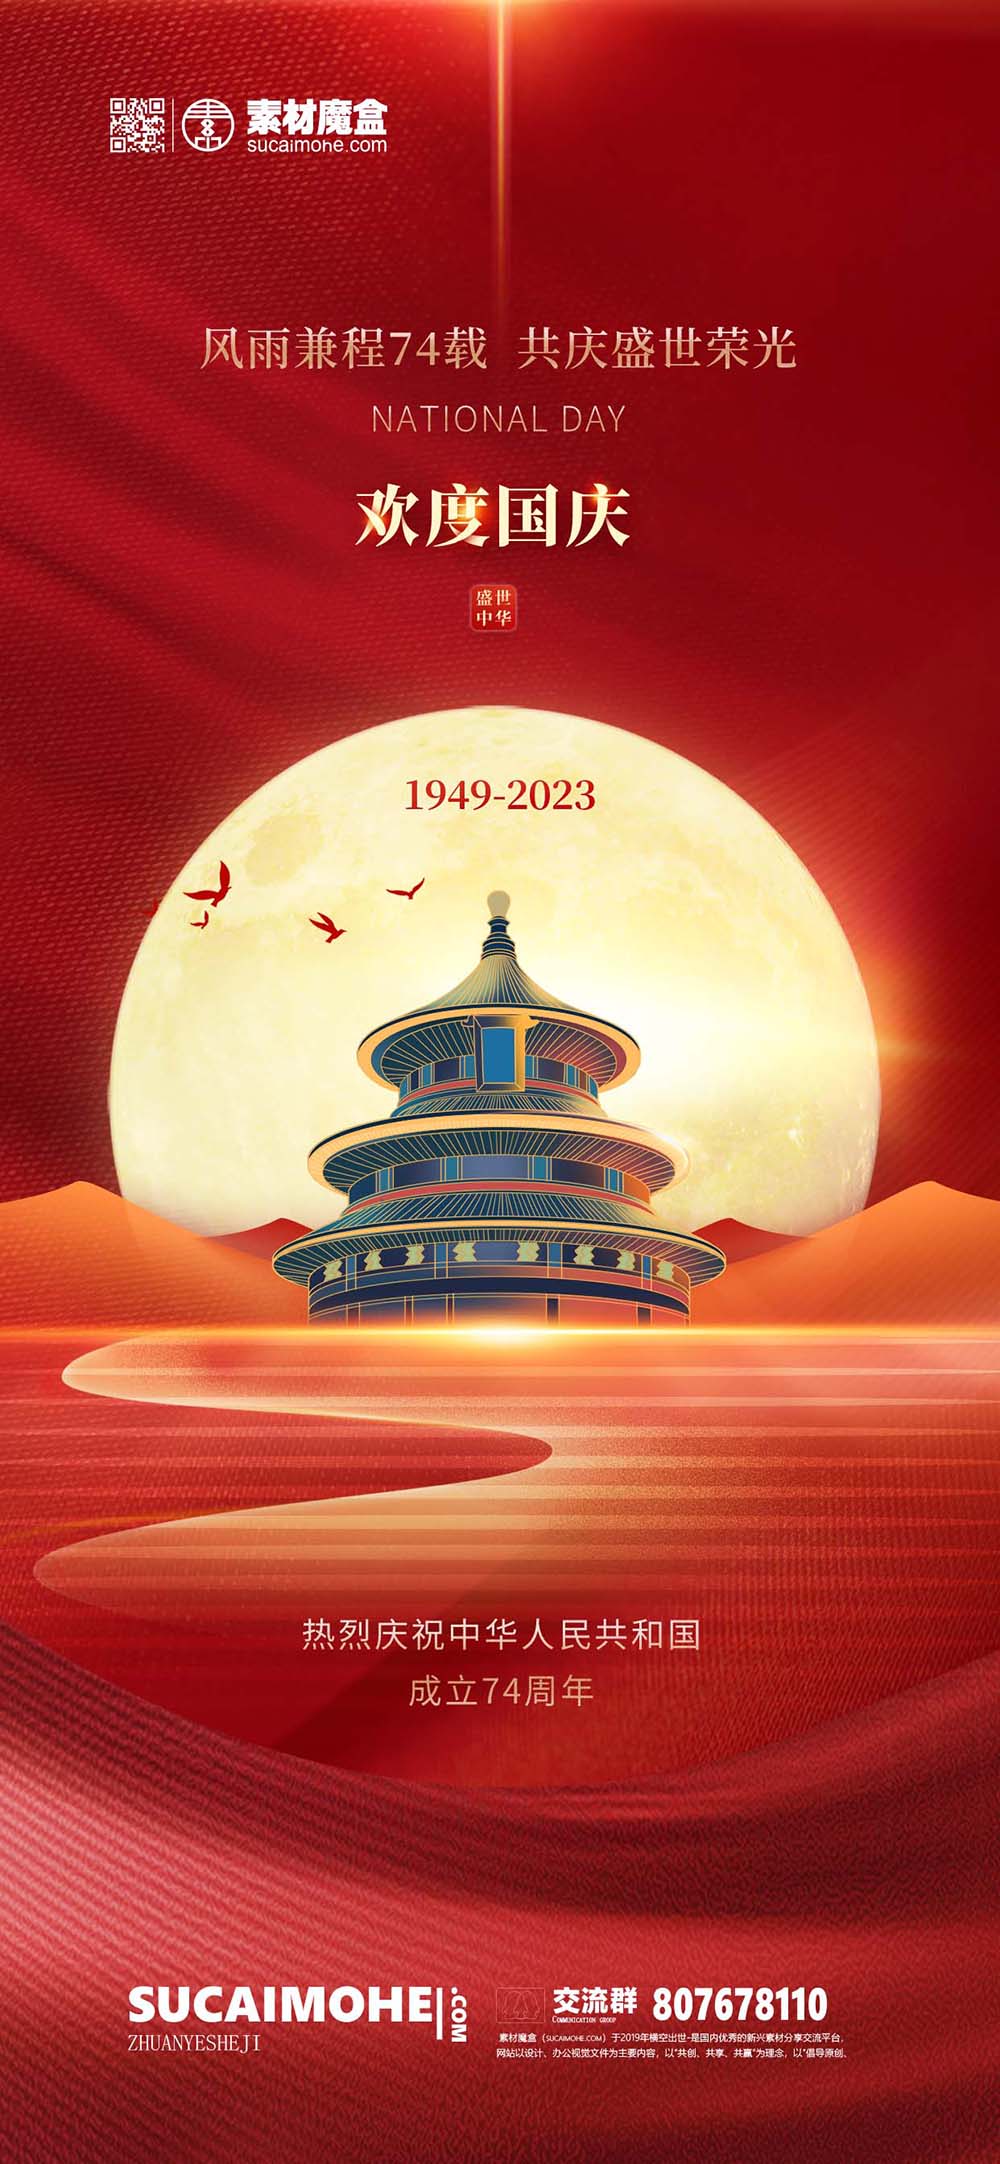 红金风国庆节节日宣传海报